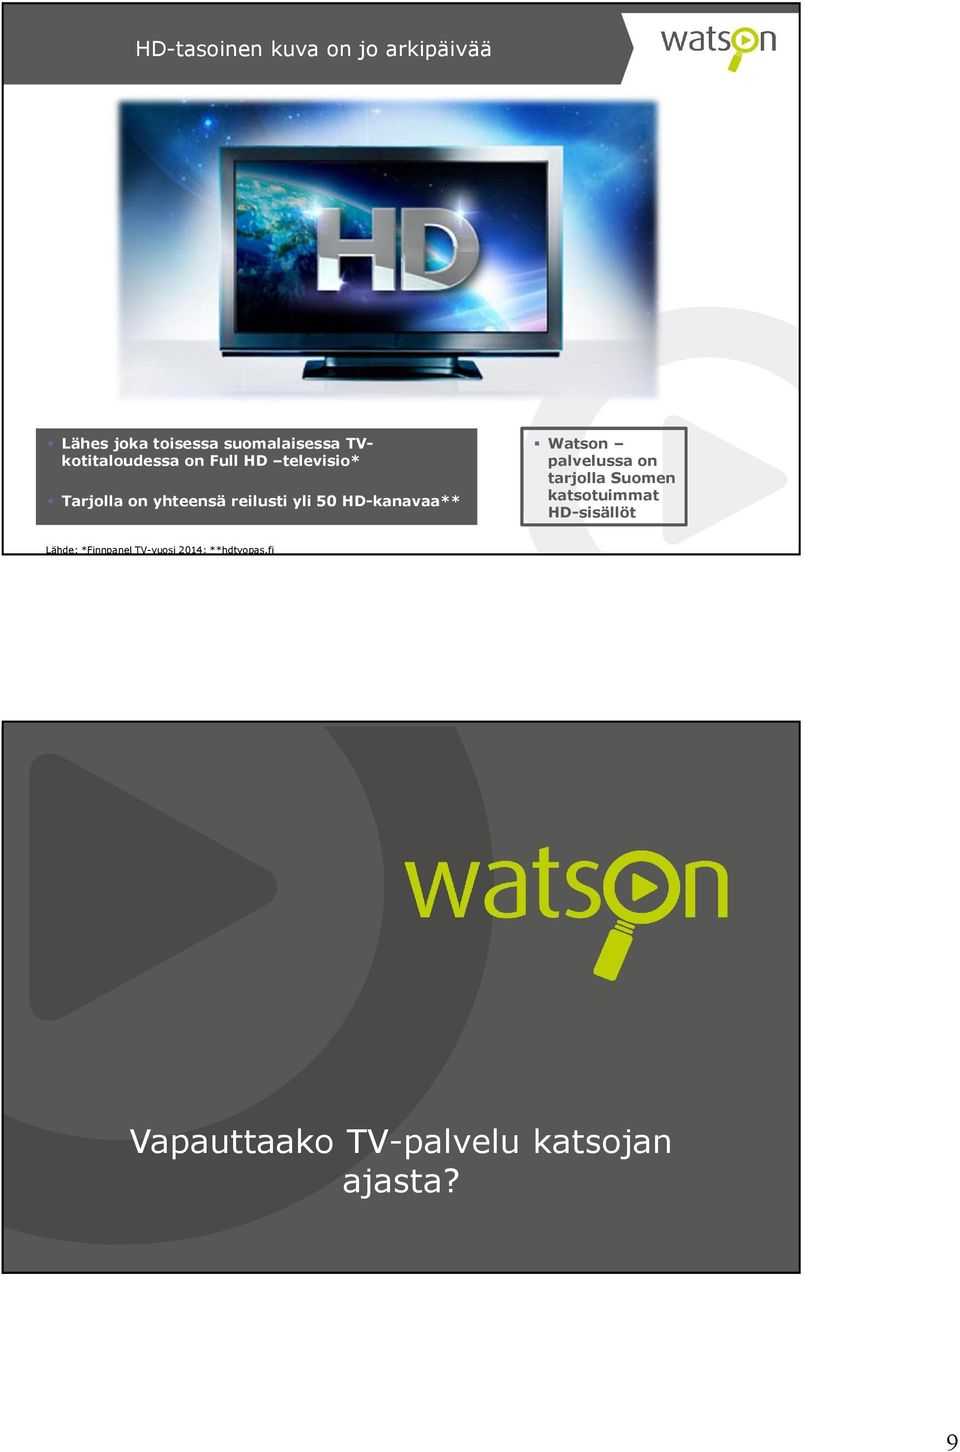 HD-kanavaa** Watson palvelussa on tarjolla Suomen katsotuimmat HD-sisällöt